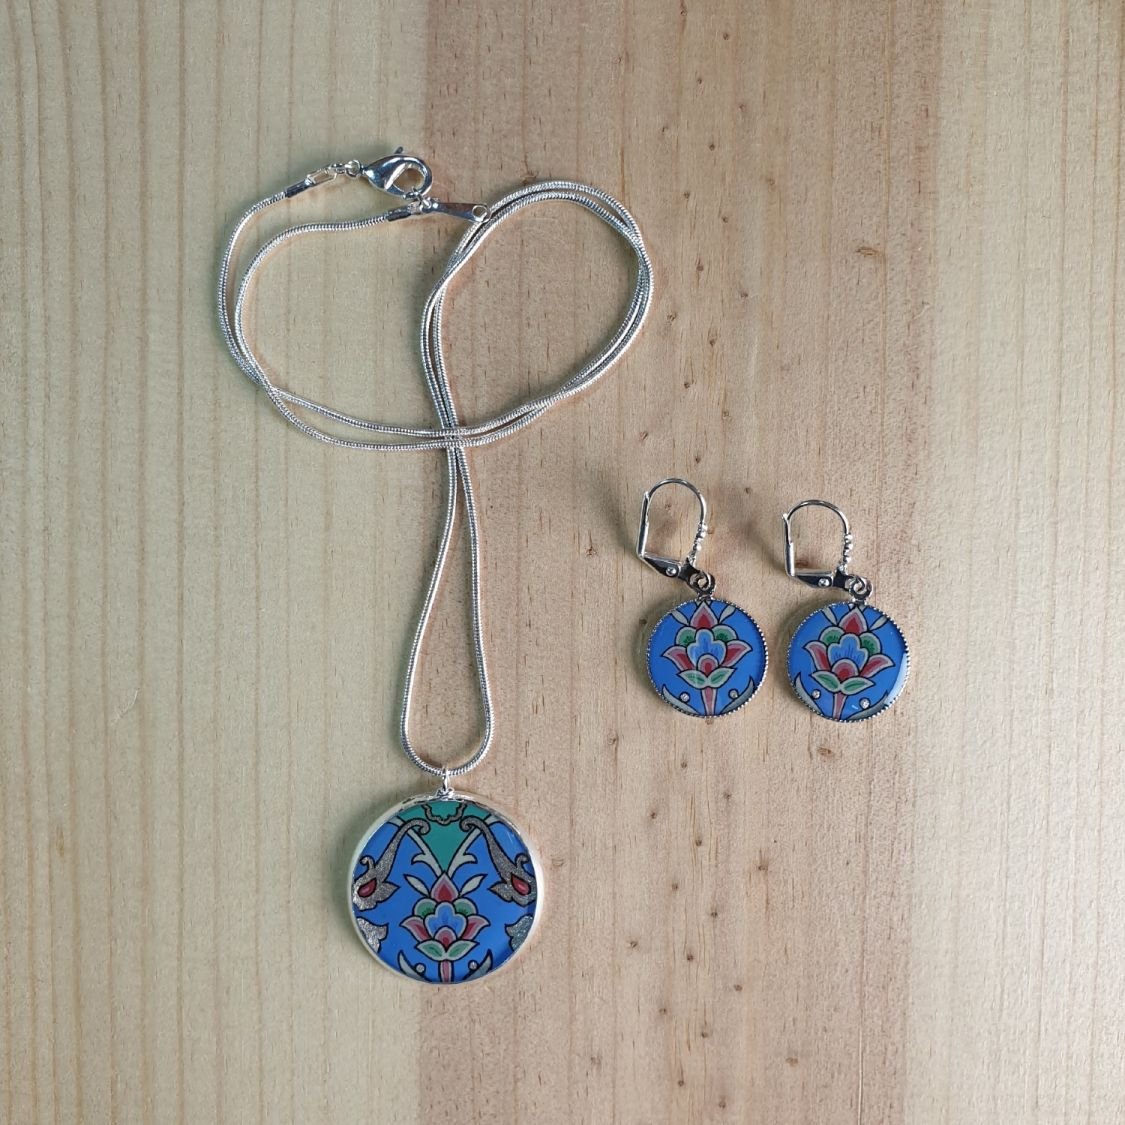 Collier pendentif fleur et arabesques bleu/argenté/vert/rosé sur chaîne argentée